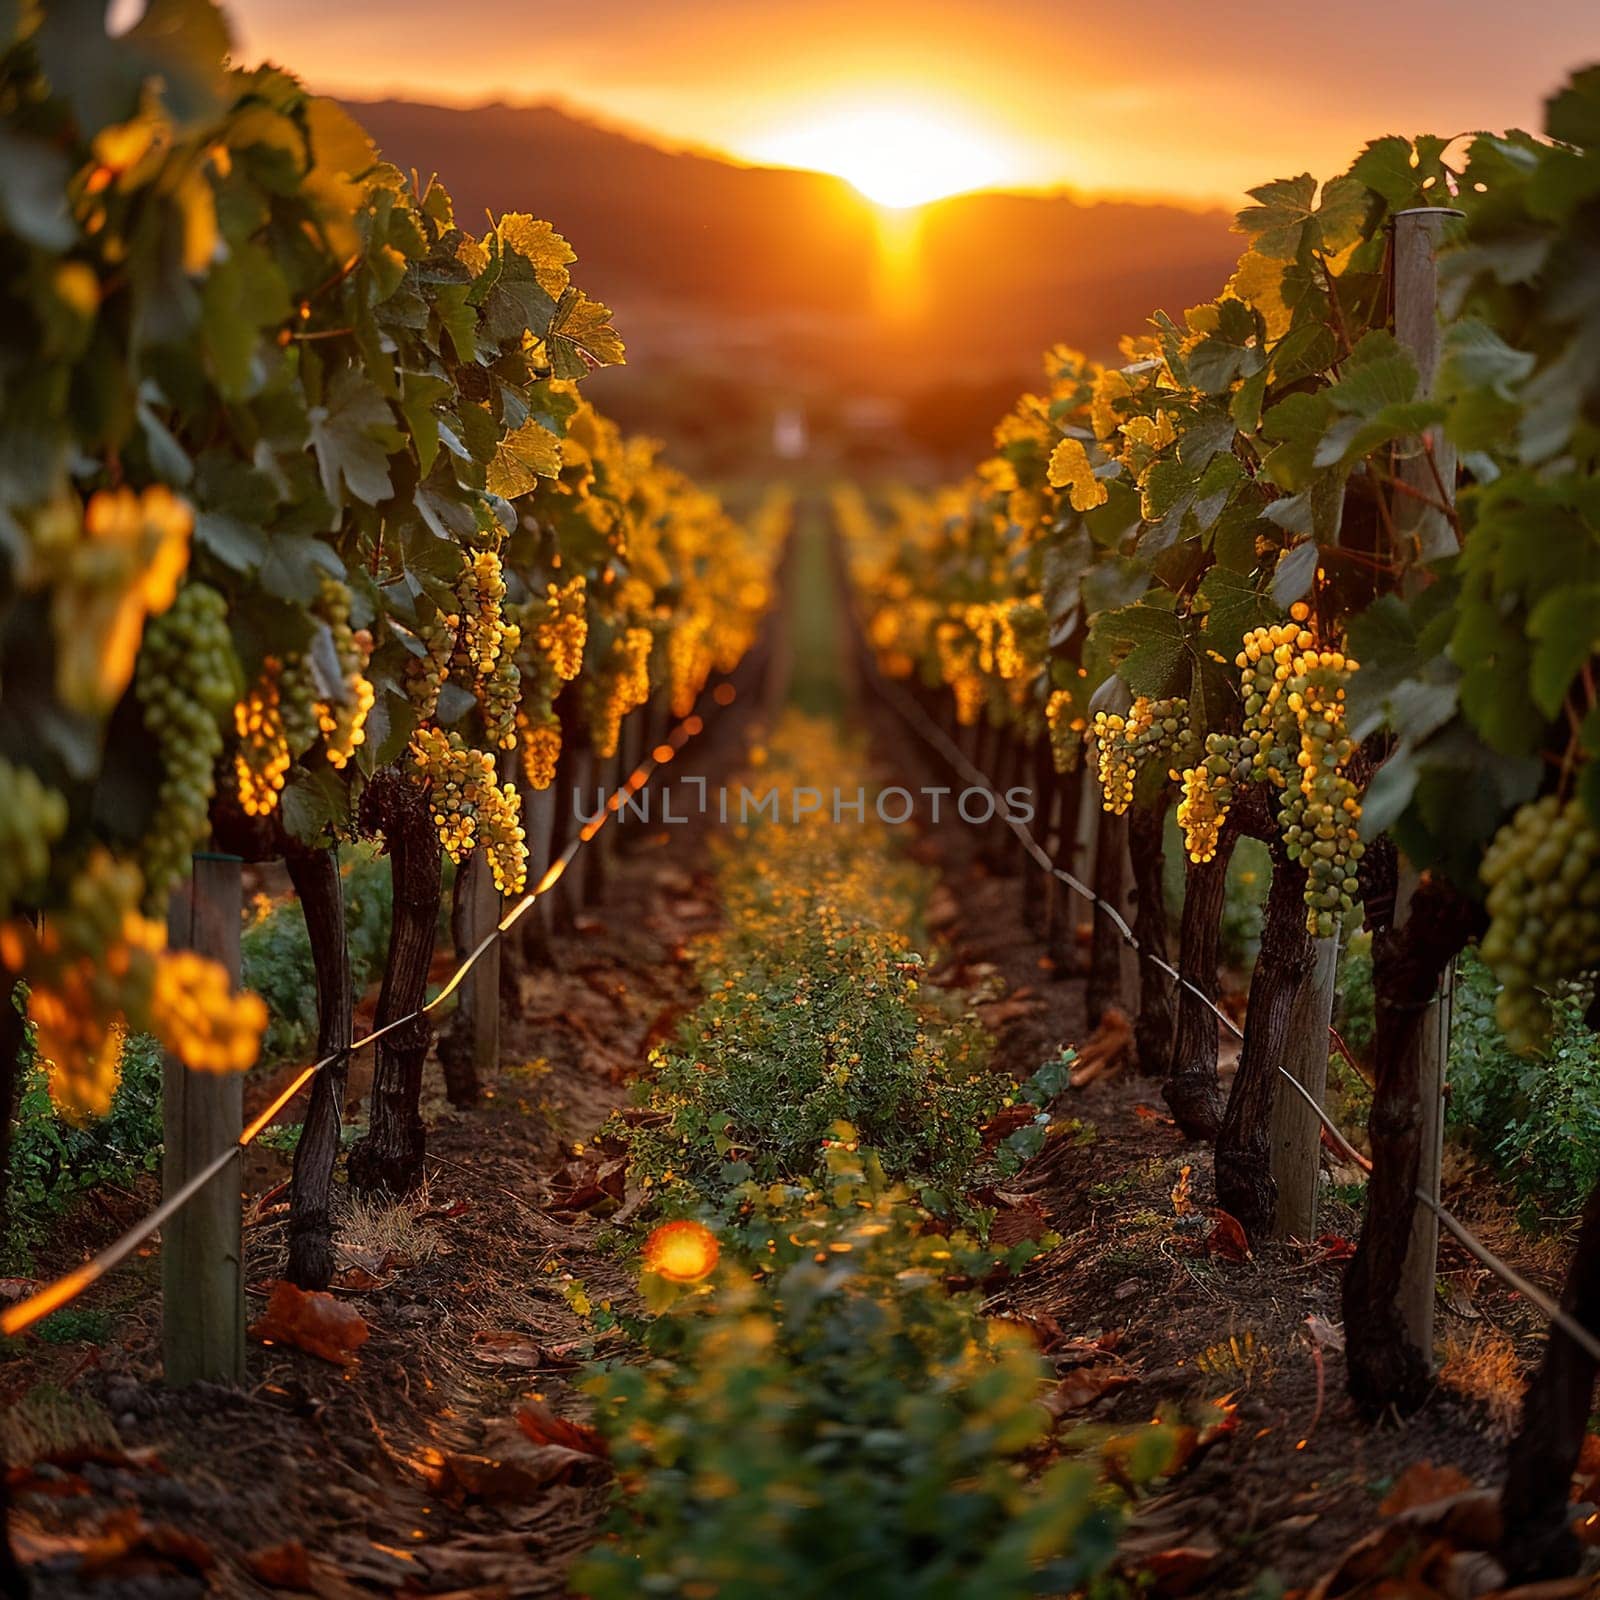 Golden hour sunlight filtering through a vineyard by Benzoix